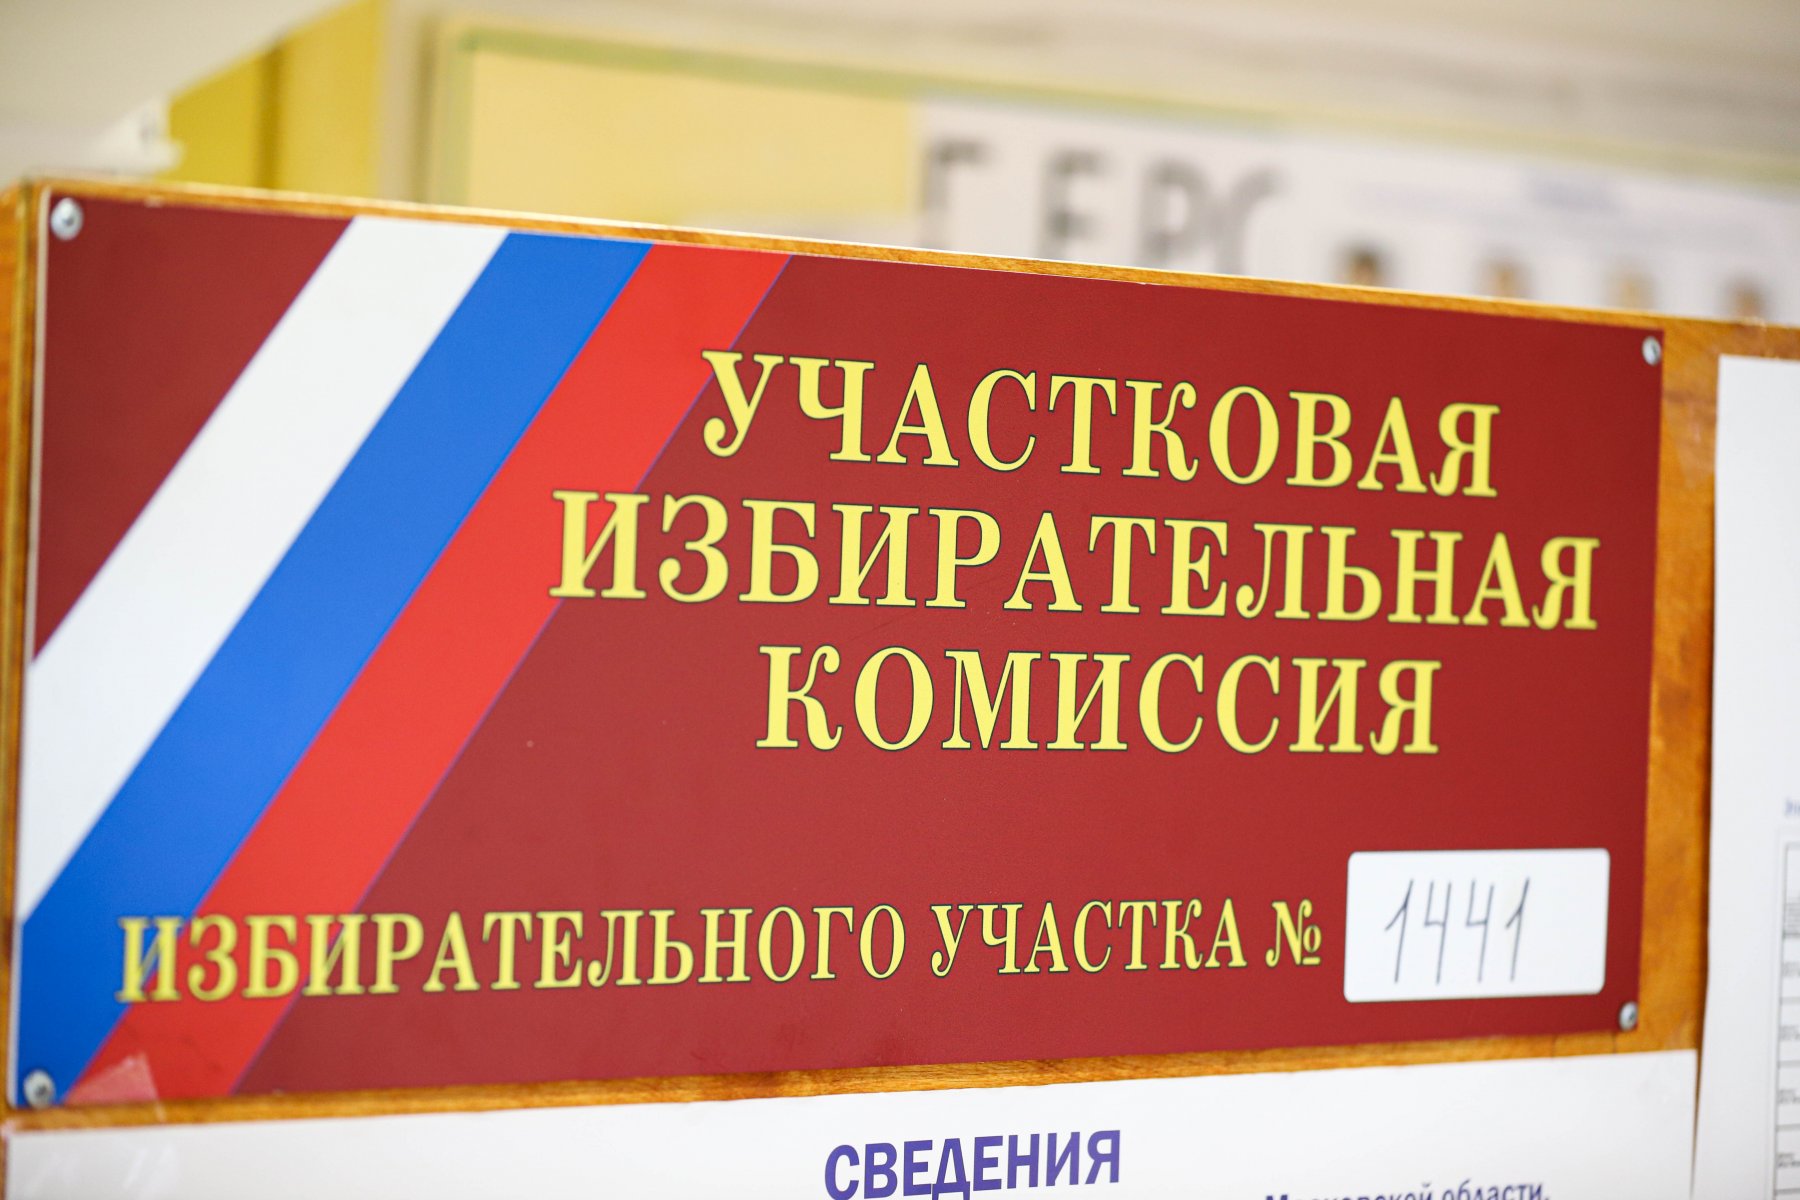 Явка на выборах в Подмосковье в первый день составила около 2 млн человек